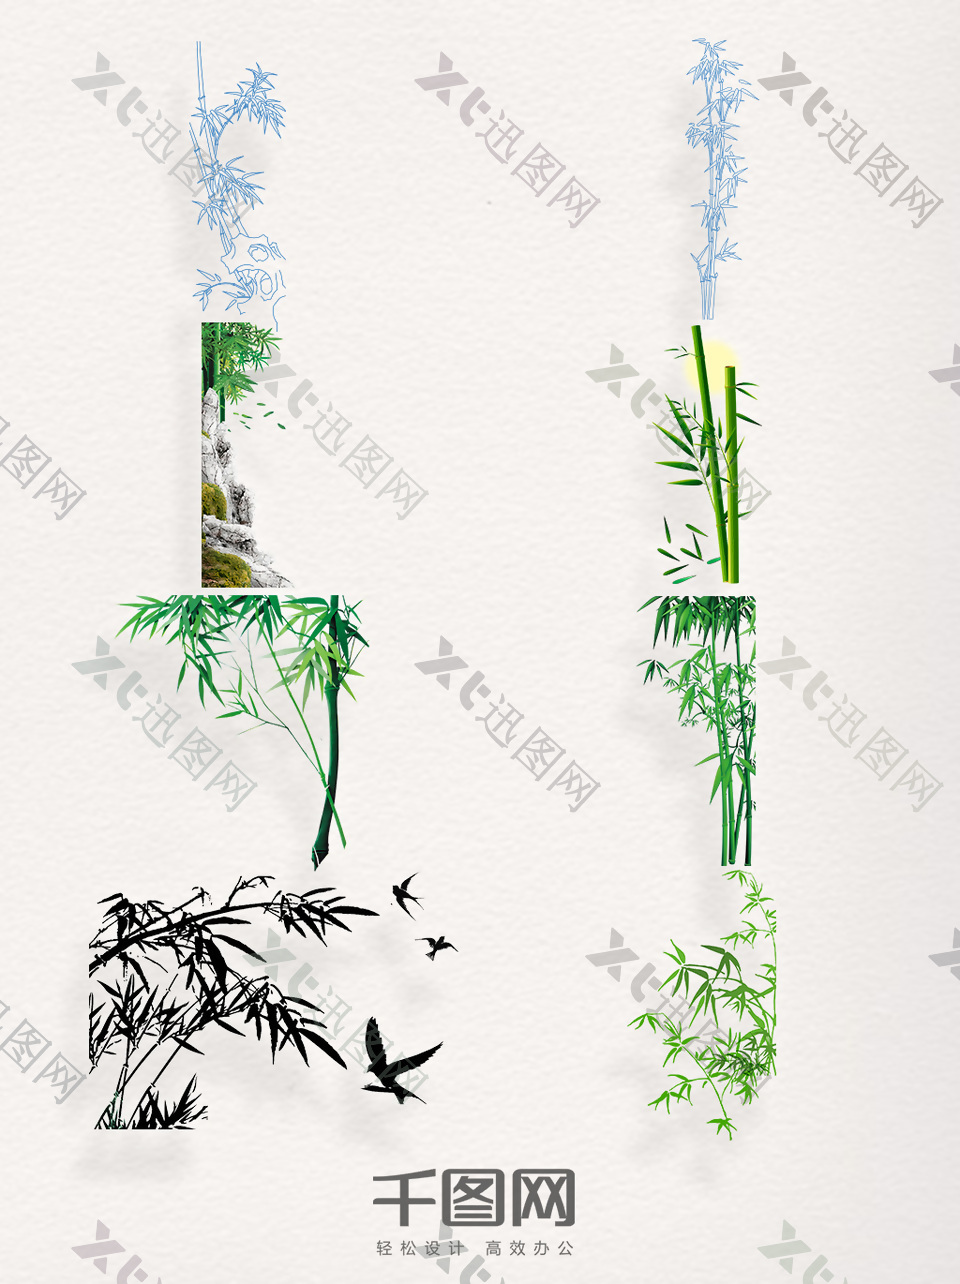 一组中国风手绘竹子装饰图